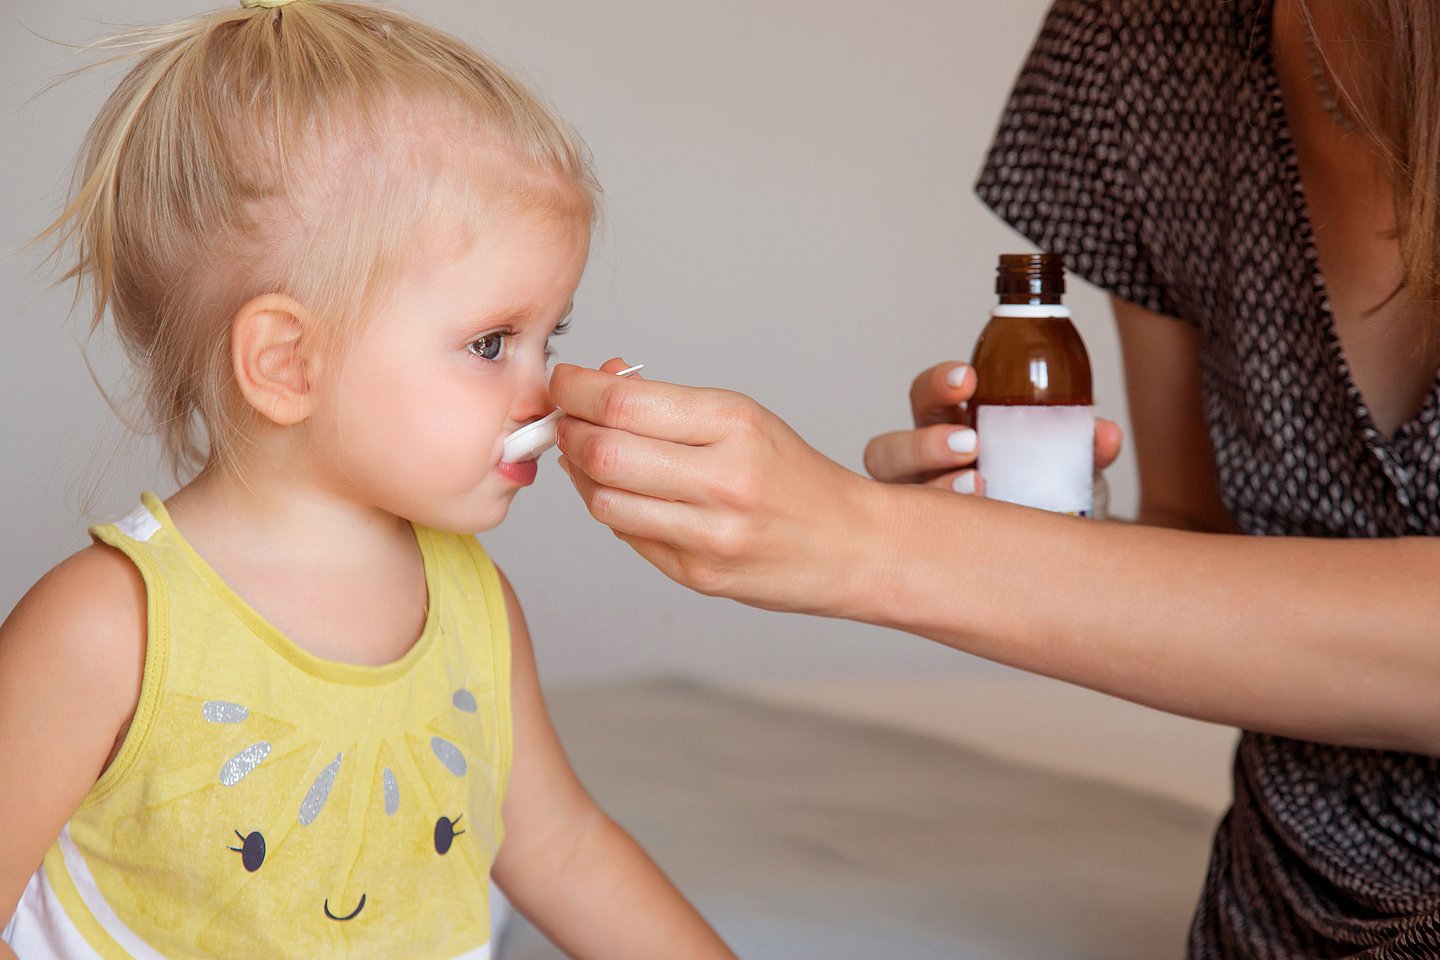 Foto: Ein Kleinkind erhält mit einem Löffel einen Medikamentensaft.